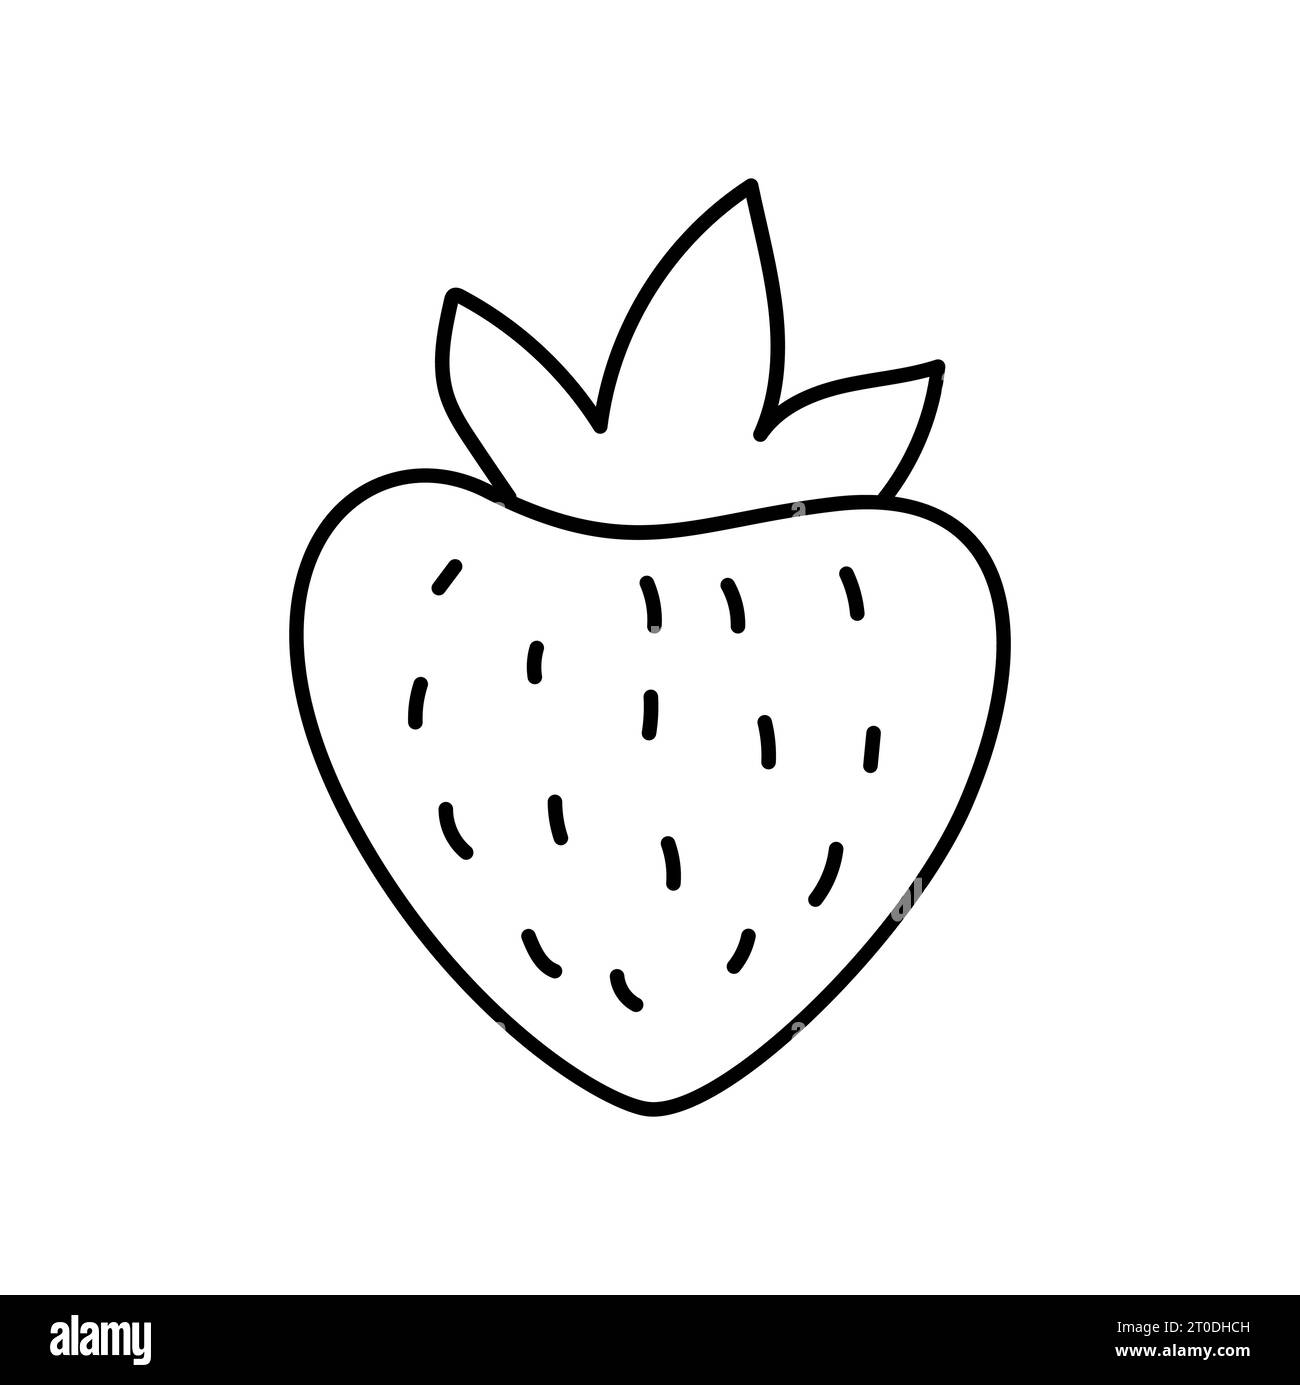 Ligne dessinée à la main fraise contour icône illustration de vecteur doodle, convient au livre de coloriage, logo, illustration, autocollant, couverture Illustration de Vecteur